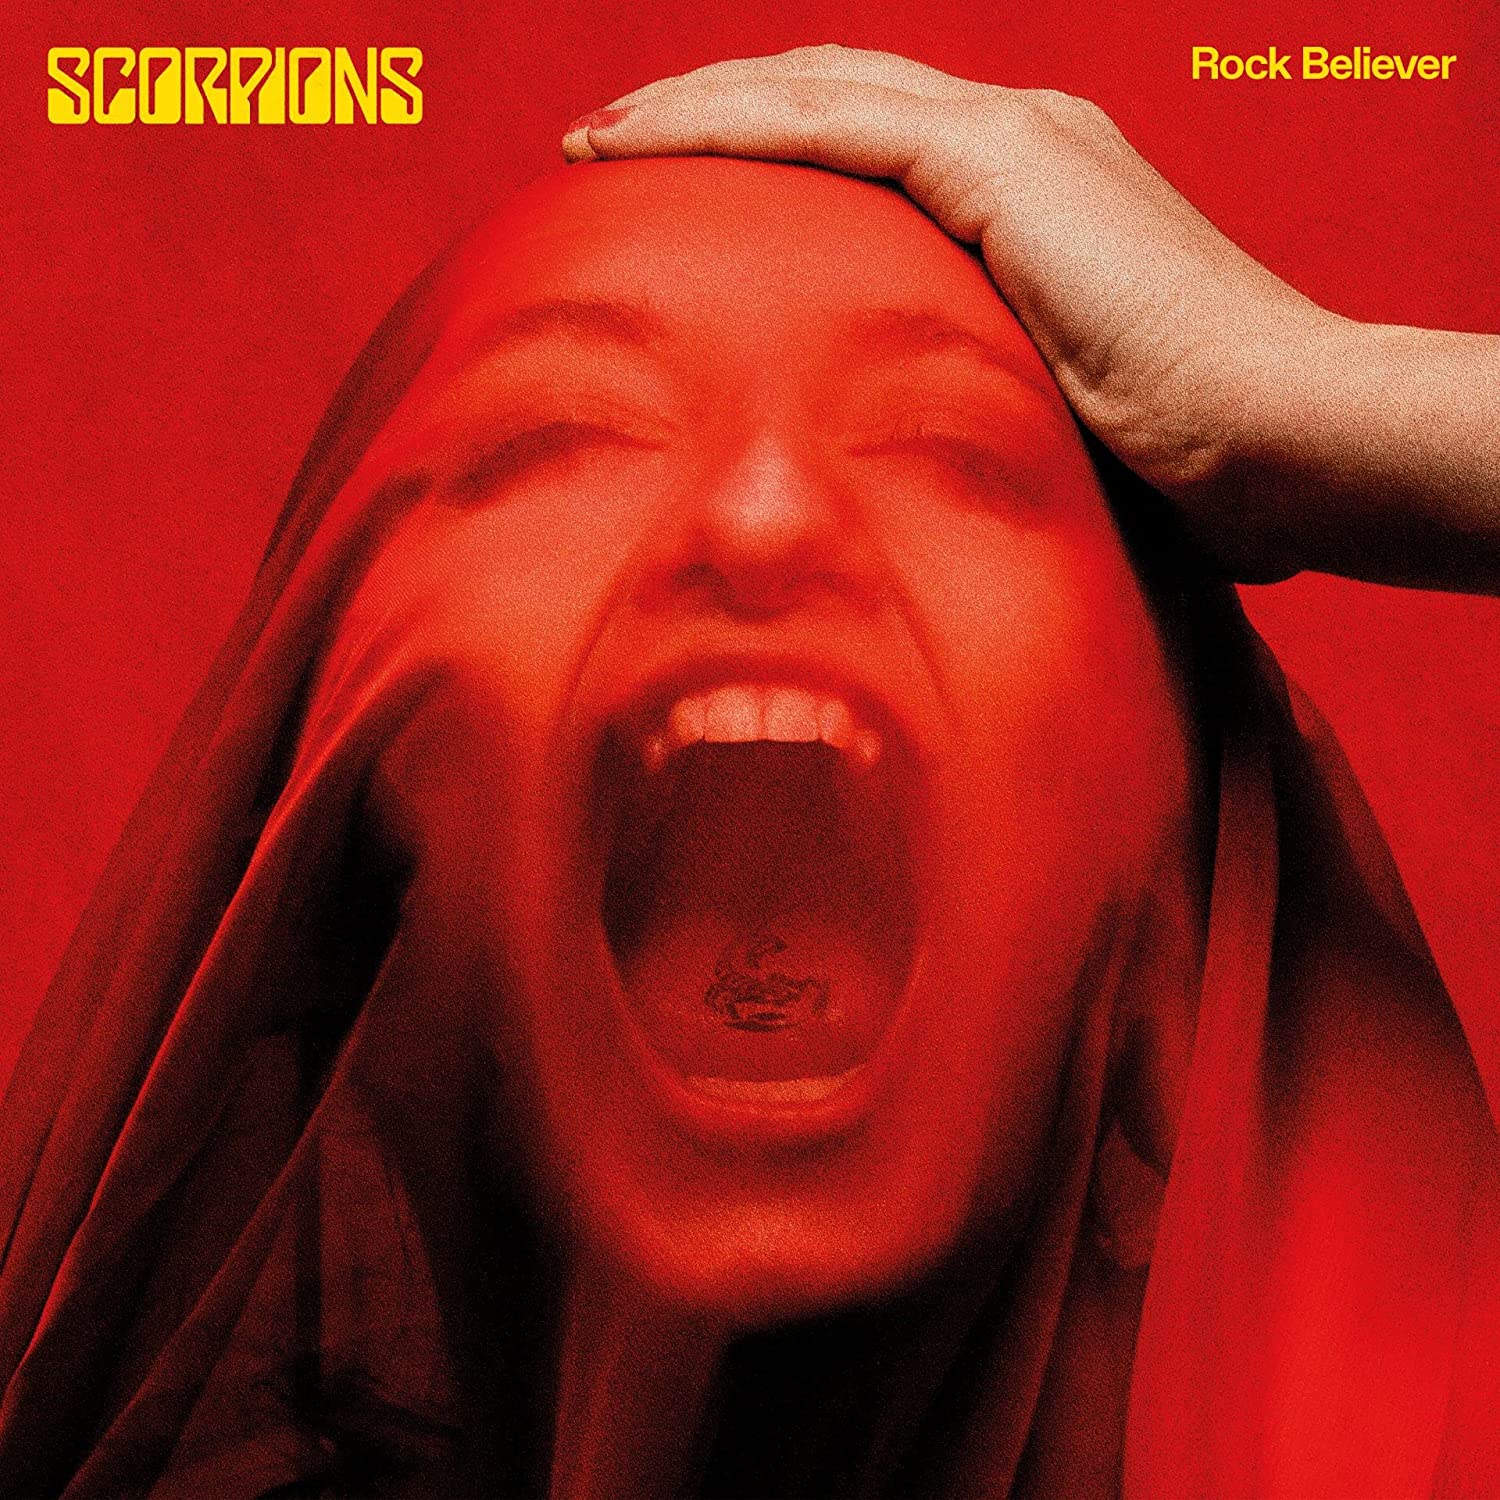 Copertina Vinile 33 giri Rock Believer di Scorpions